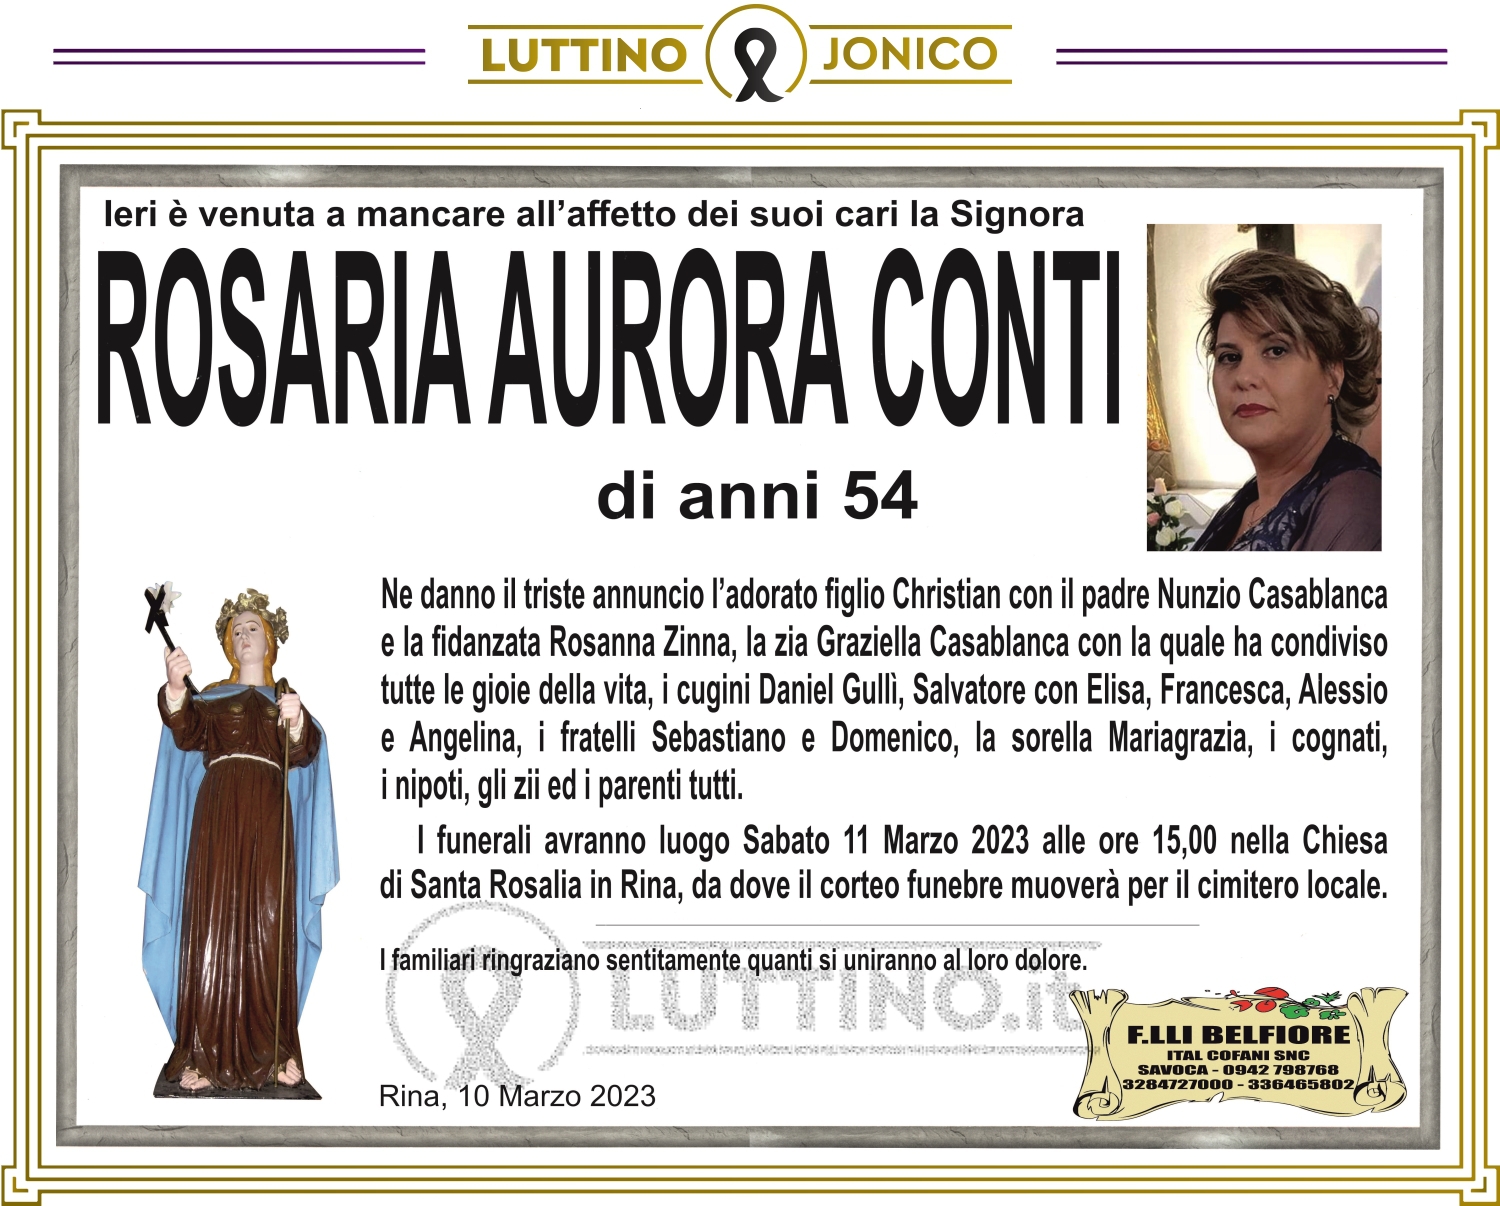 Rosaria Aurora Conti